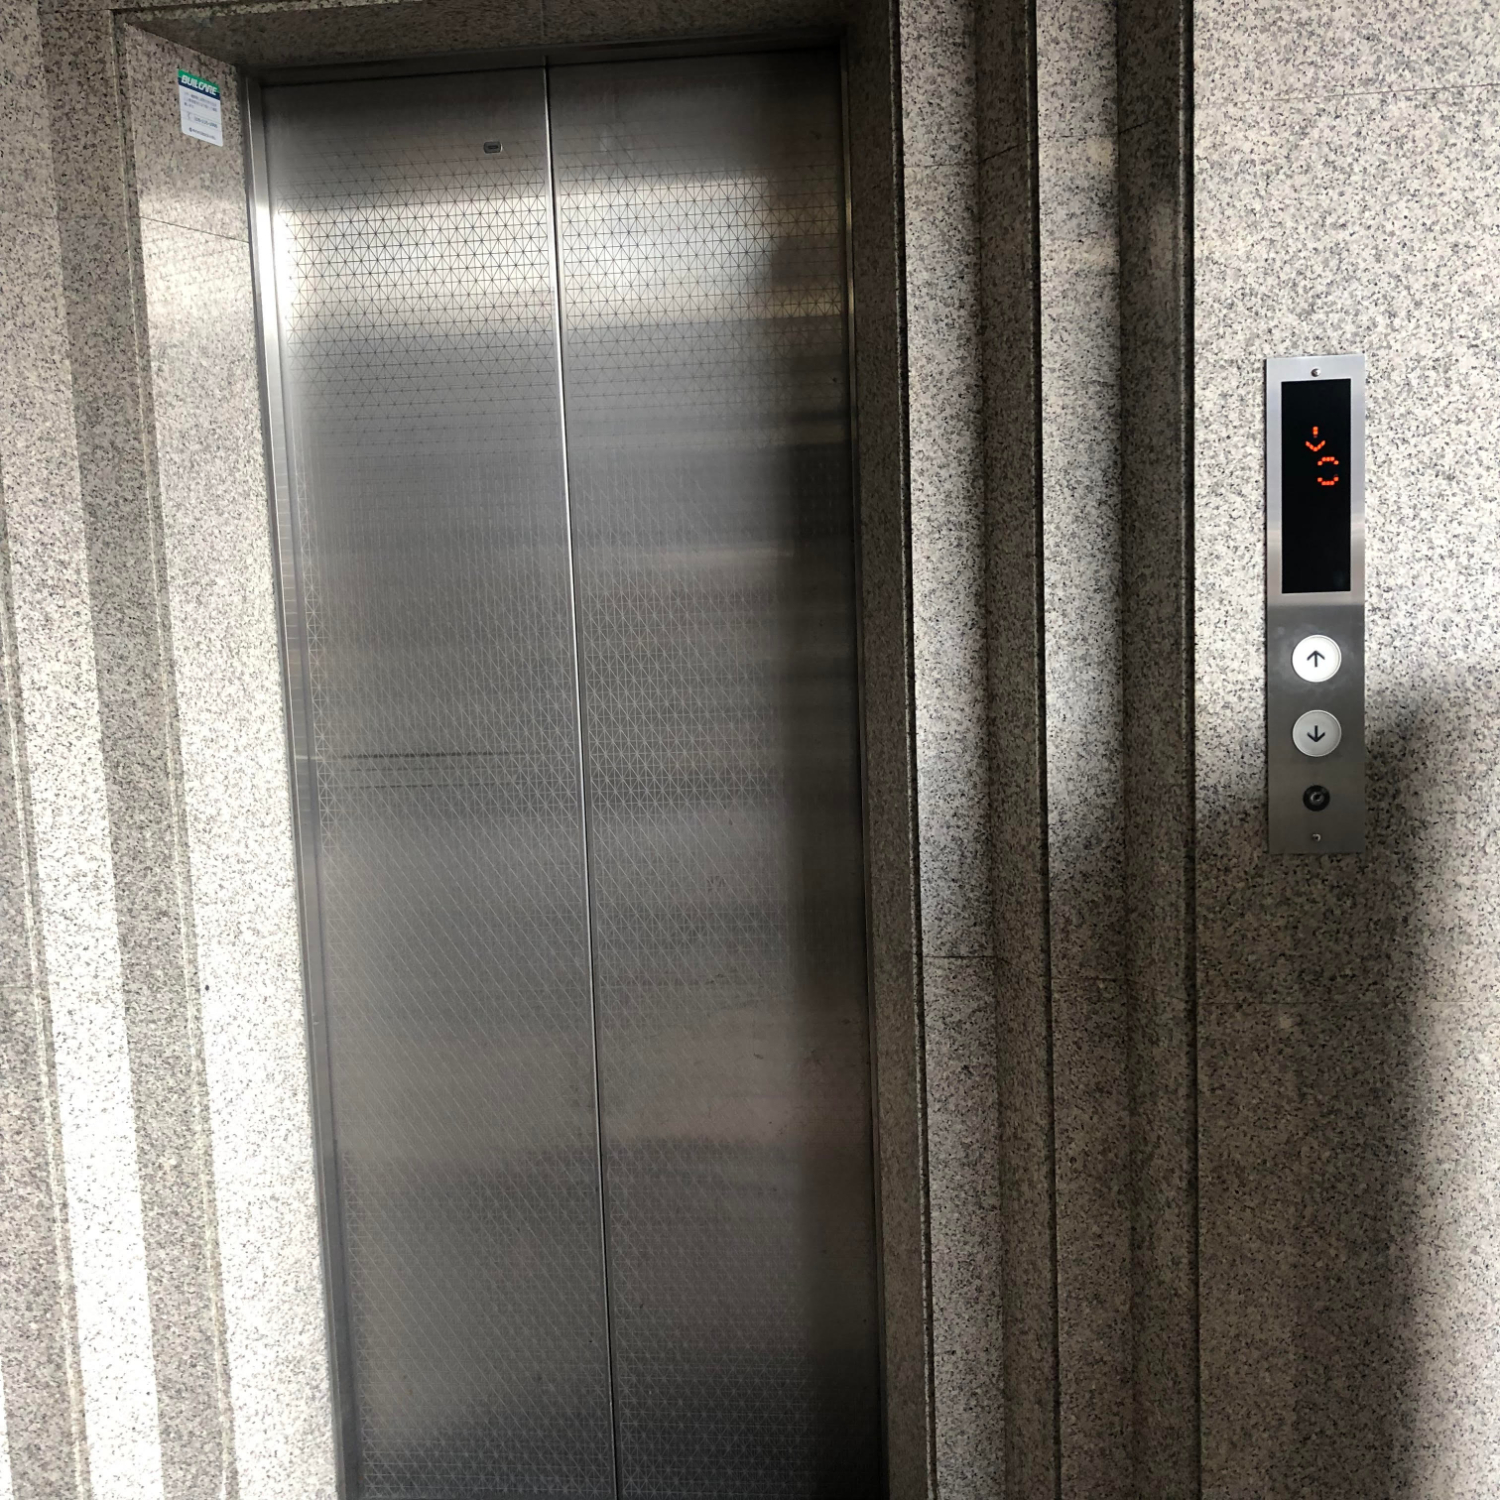 7.階段の手前にエレベーターがございますので、4Fまでお上がりください。